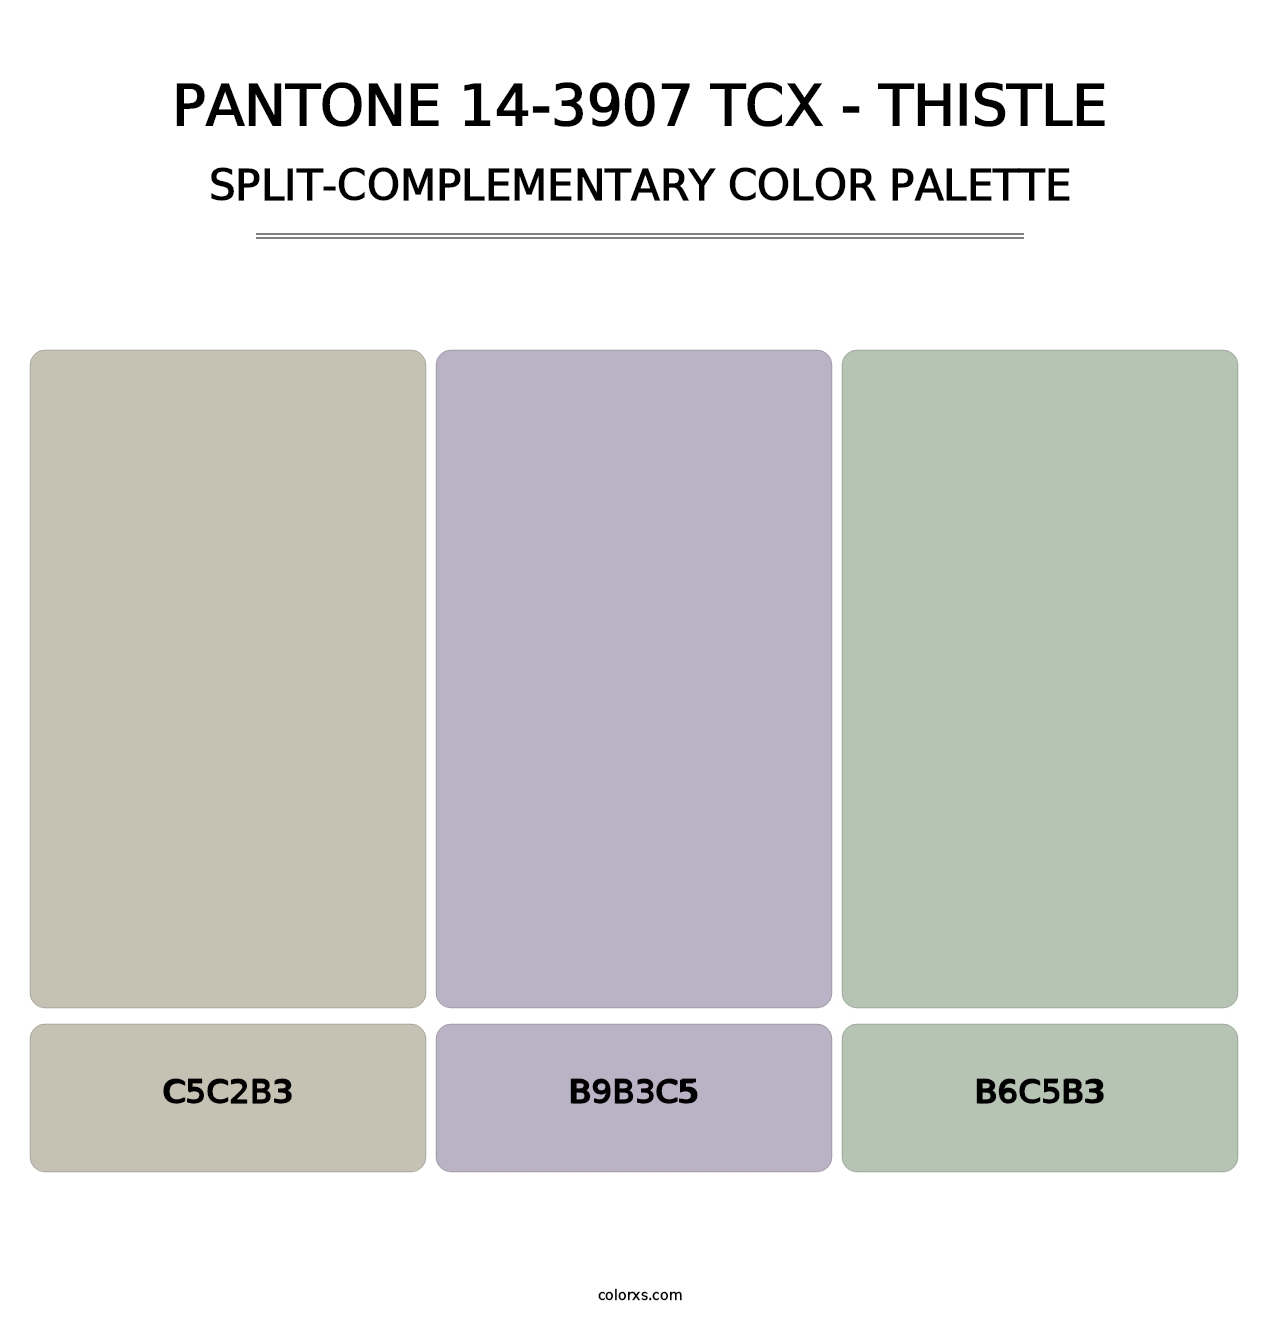 PANTONE 14-3907 TCX - Thistle - Split-Complementary Color Palette